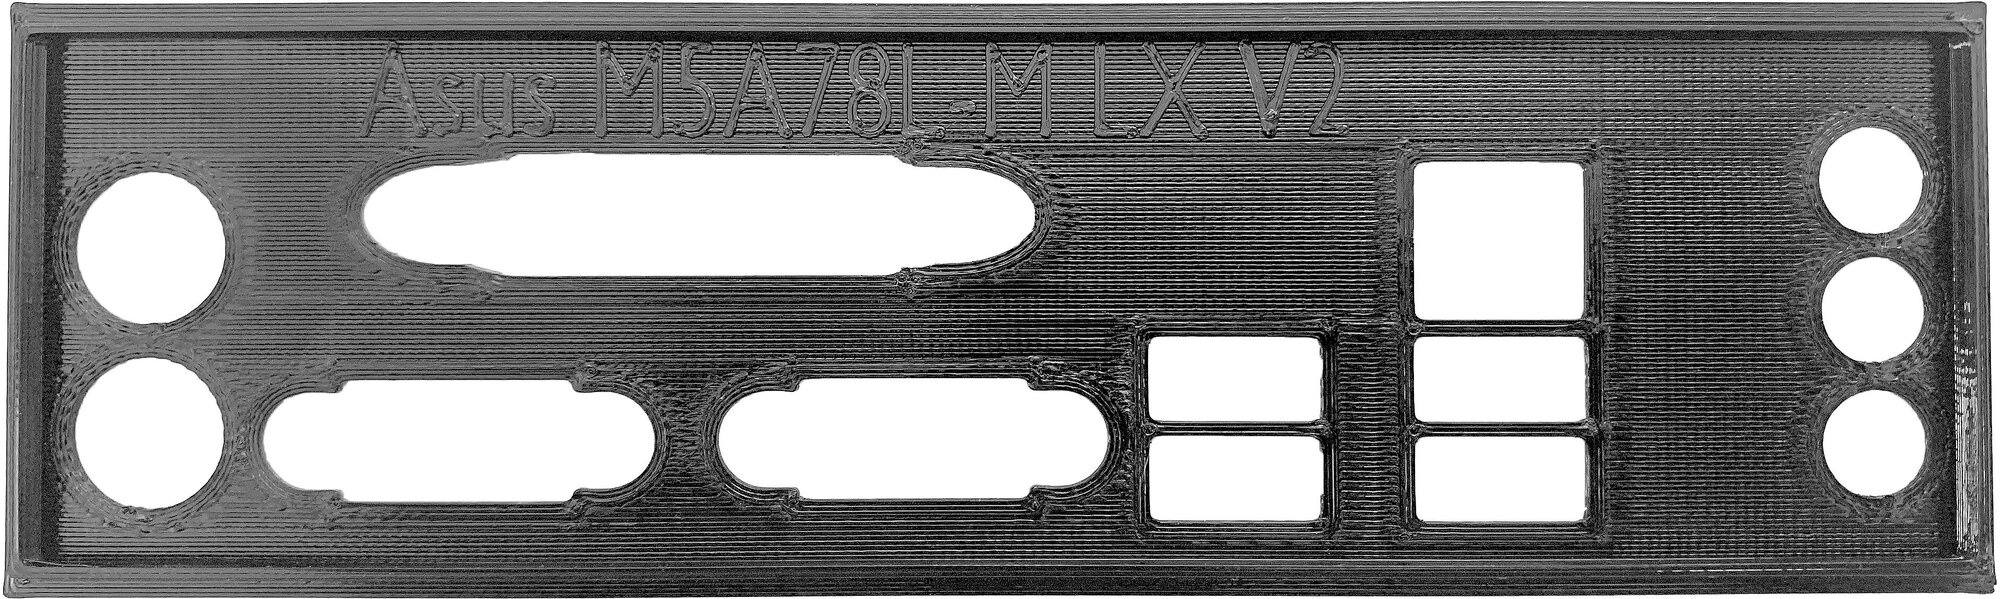 Заглушка для компьютерного корпуса к материнской плате Asus M5A78L-M LX V2 black